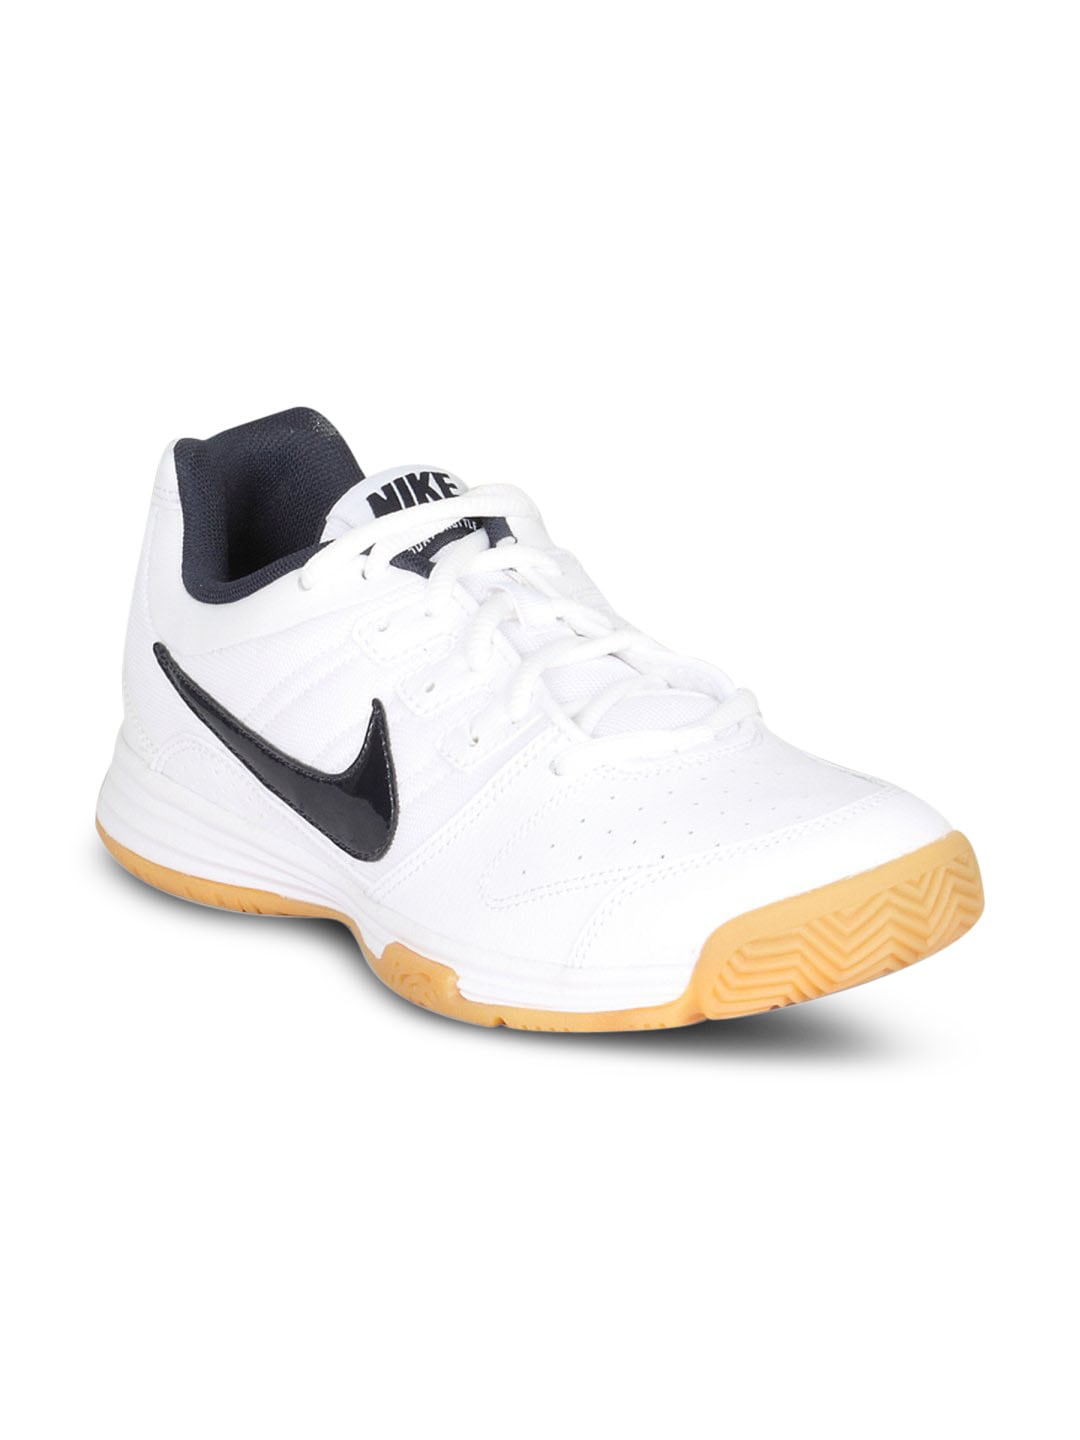 Nike Men's Court Shuttle IV White Shoe